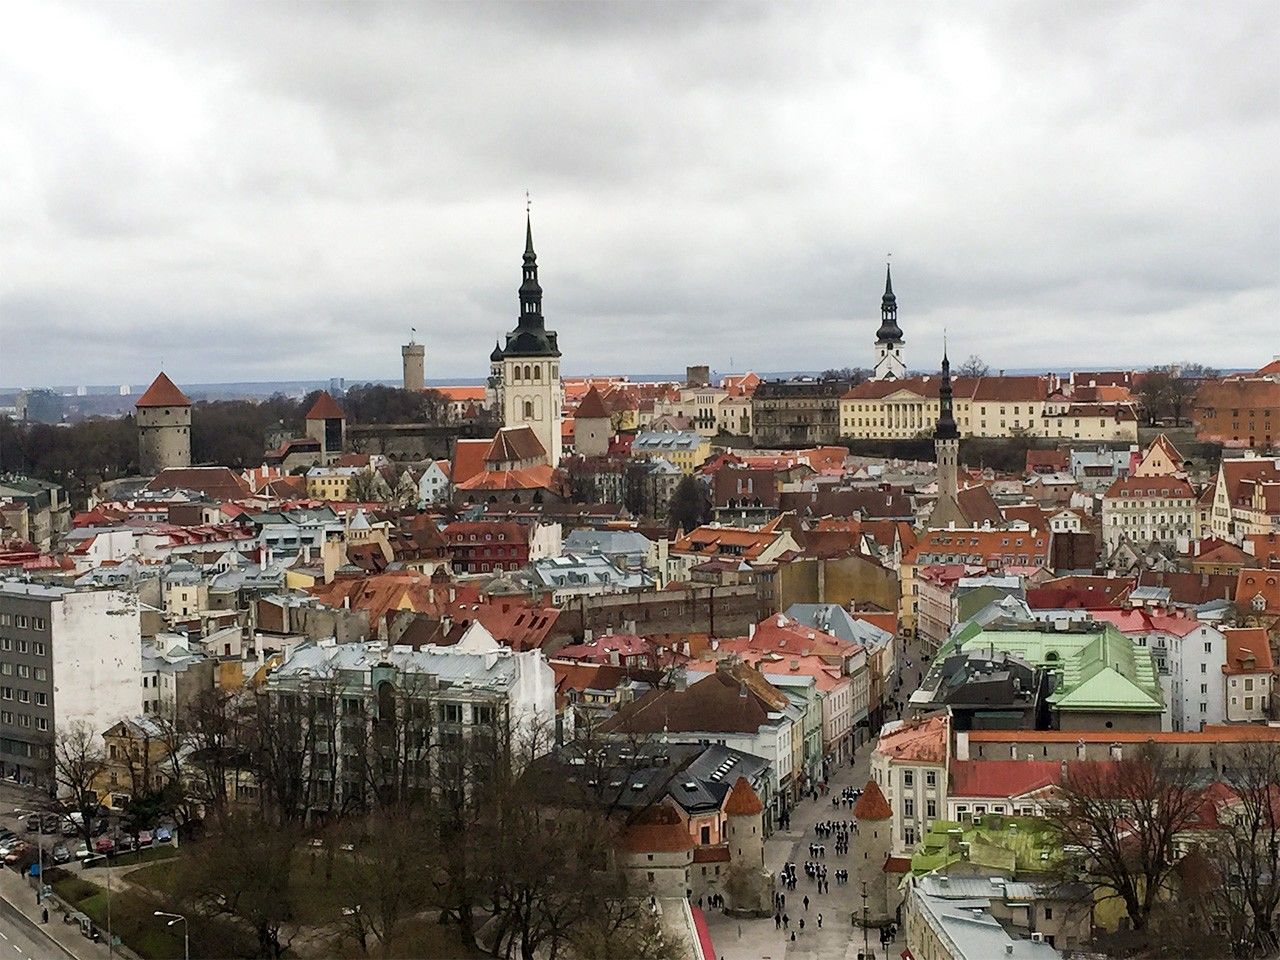 Улицы столицы Эстонии Таллина – объект Всемирного наследия ЮНЕСКО (снимок сделан автором в апреле 2018 года)